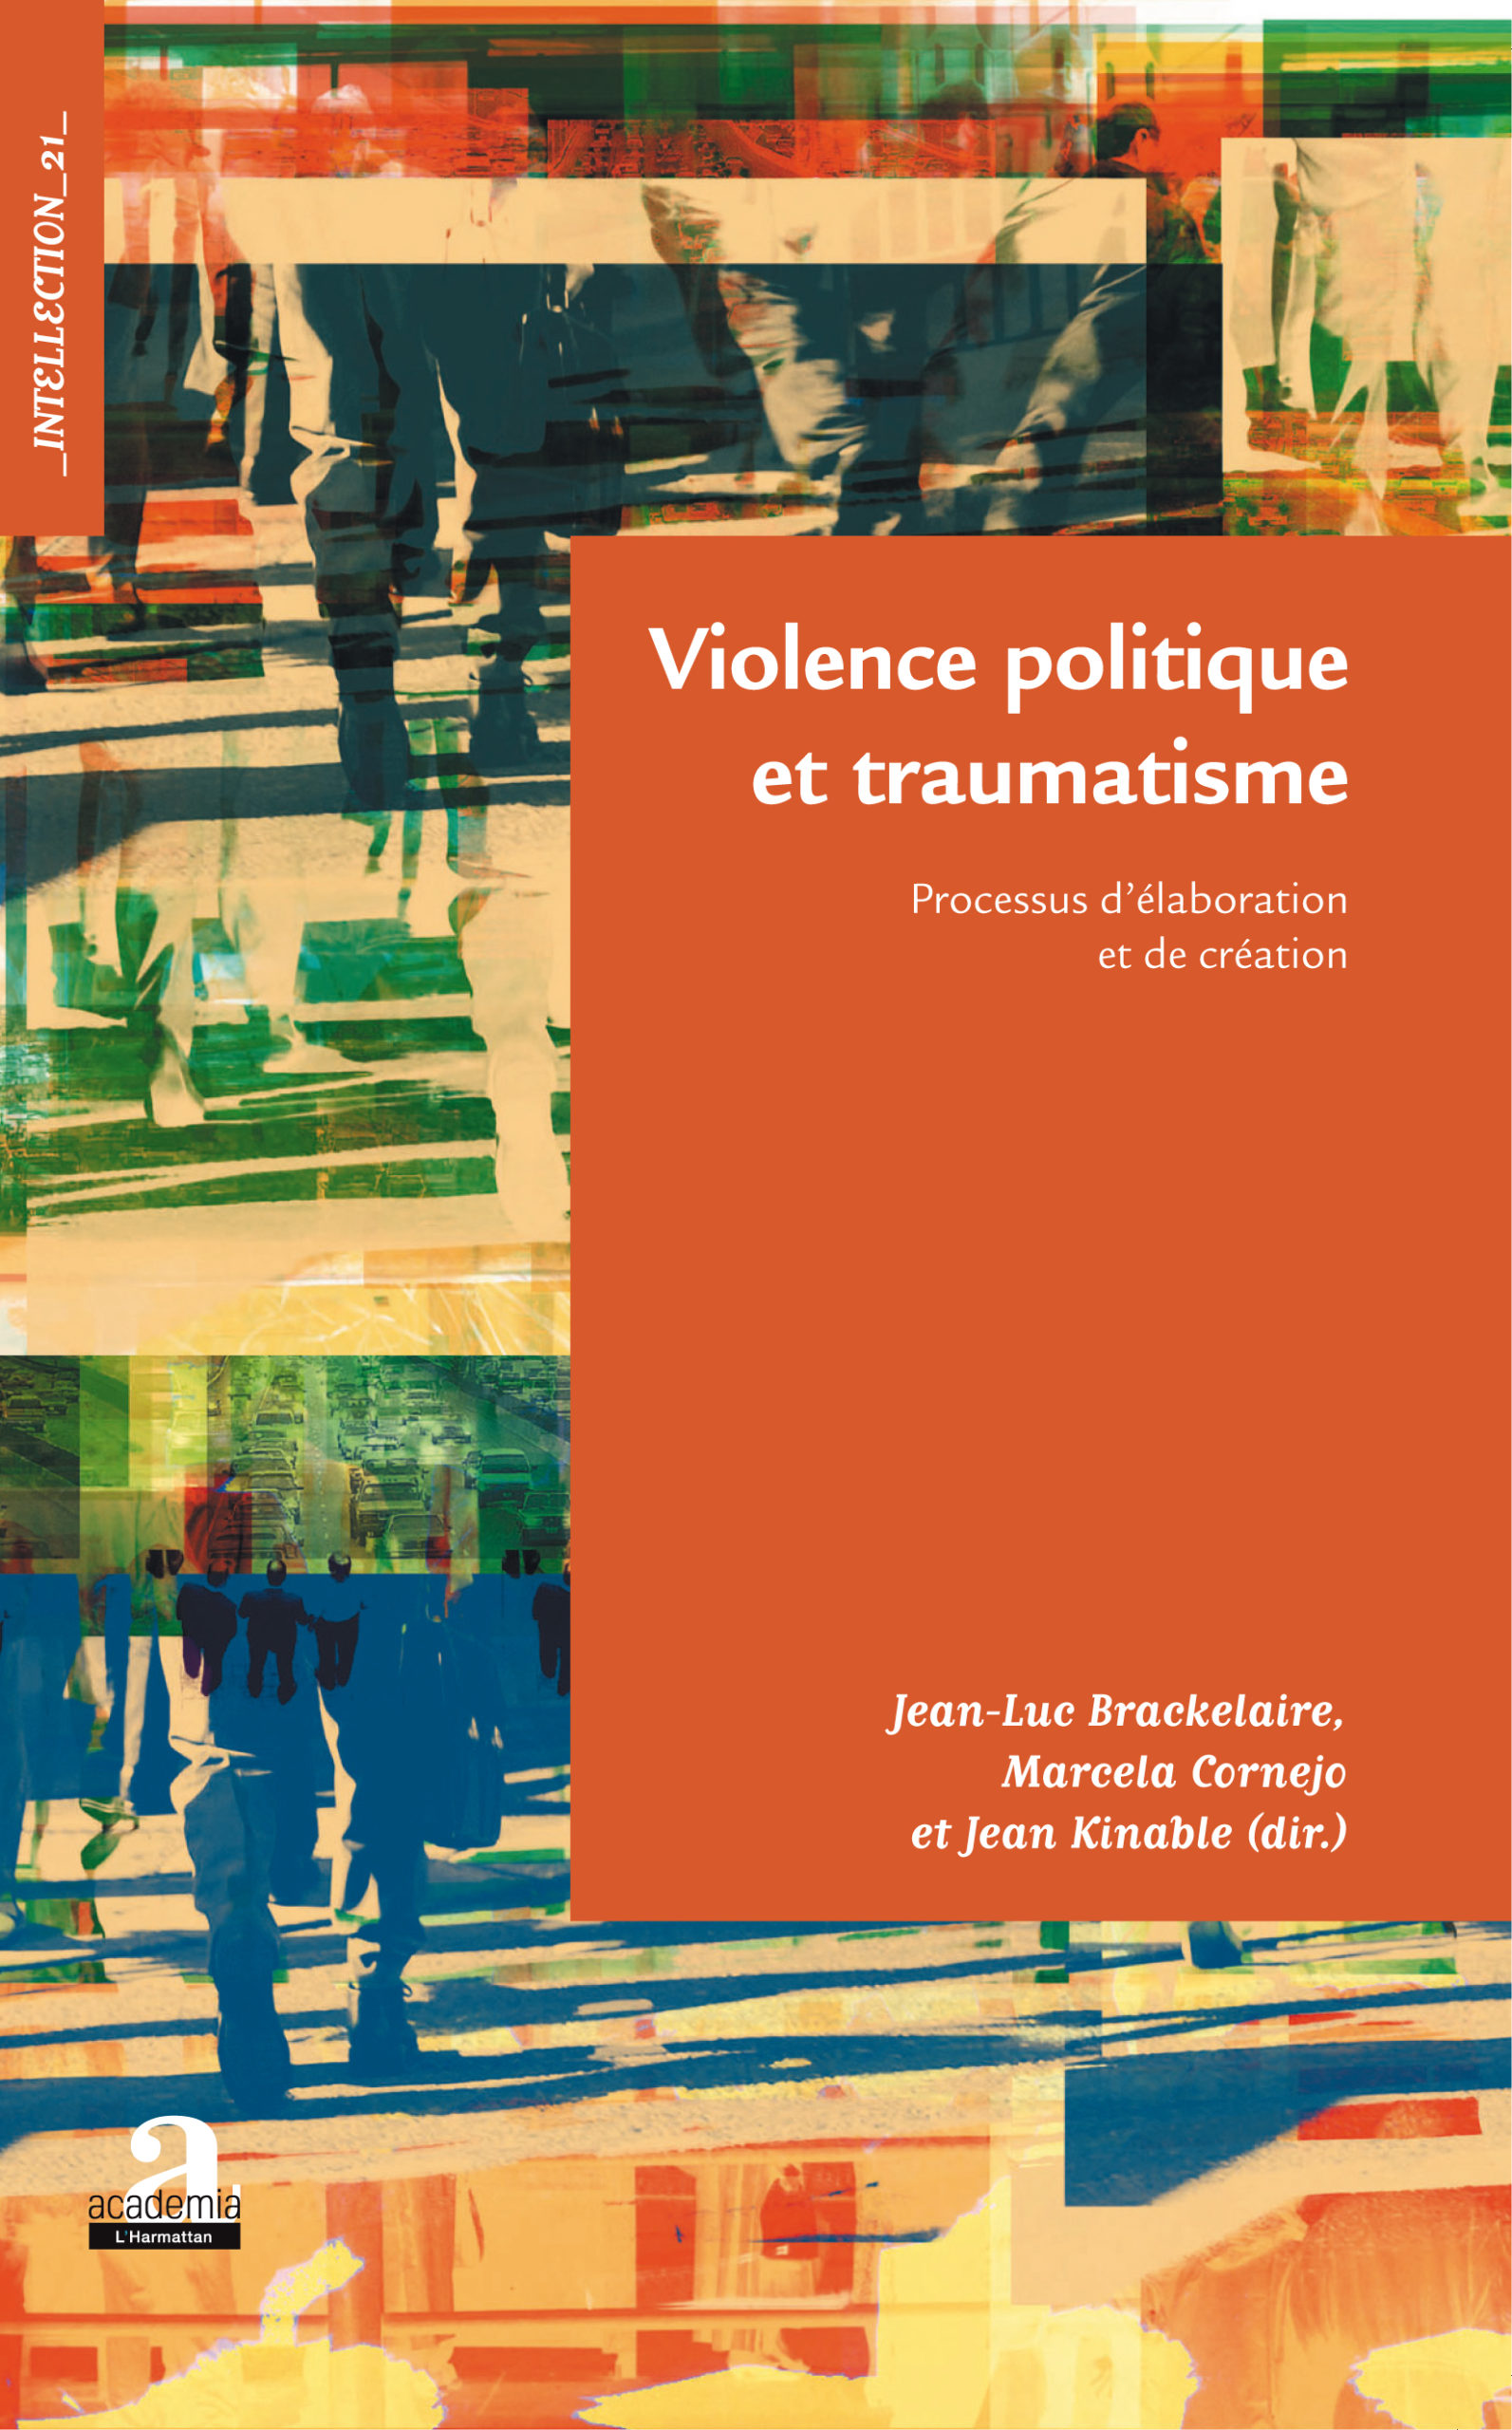 You are currently viewing Violence politique et traumatisme, sous la direction de Jean-Luc Brackelaire, Marcela Cornejo et Jean Kinable